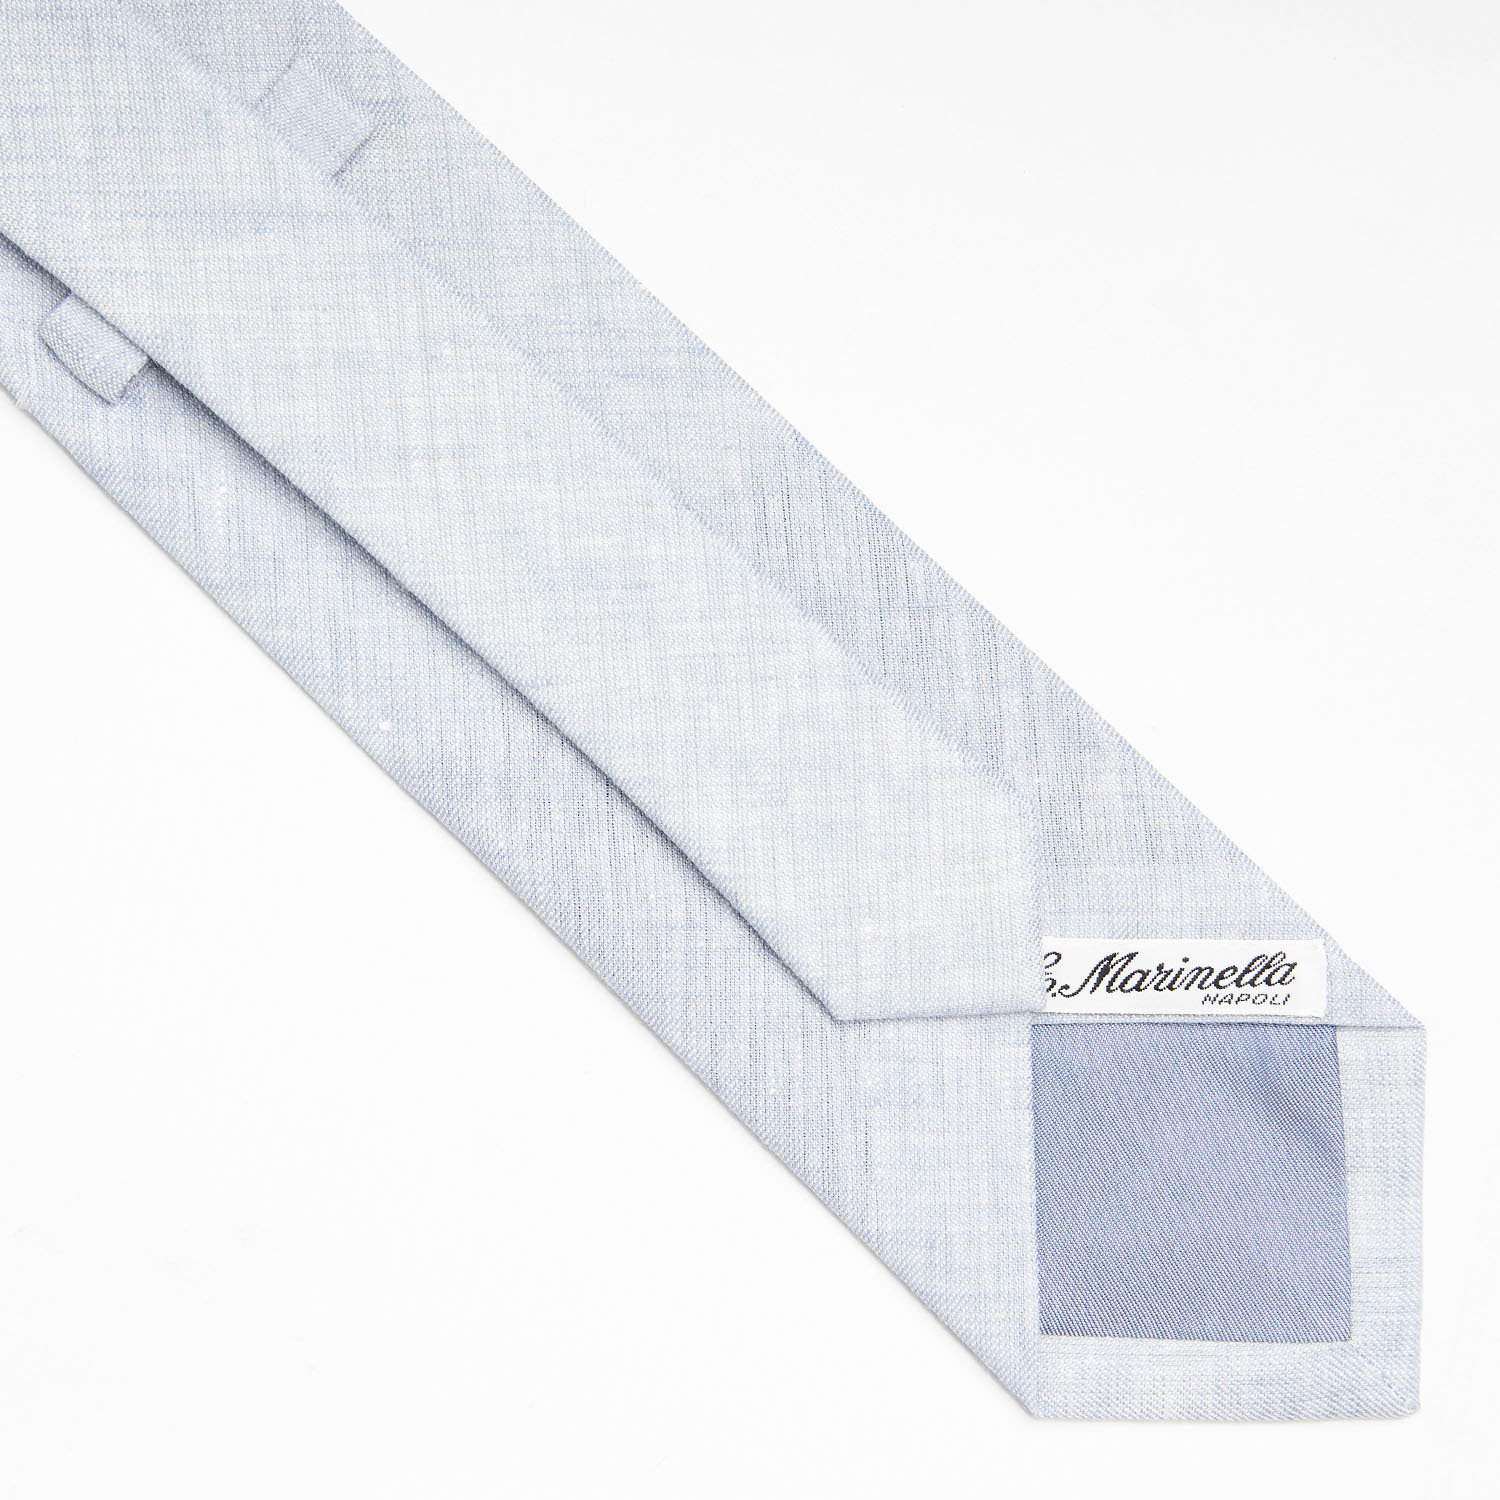 linen tie / cravatta in lino